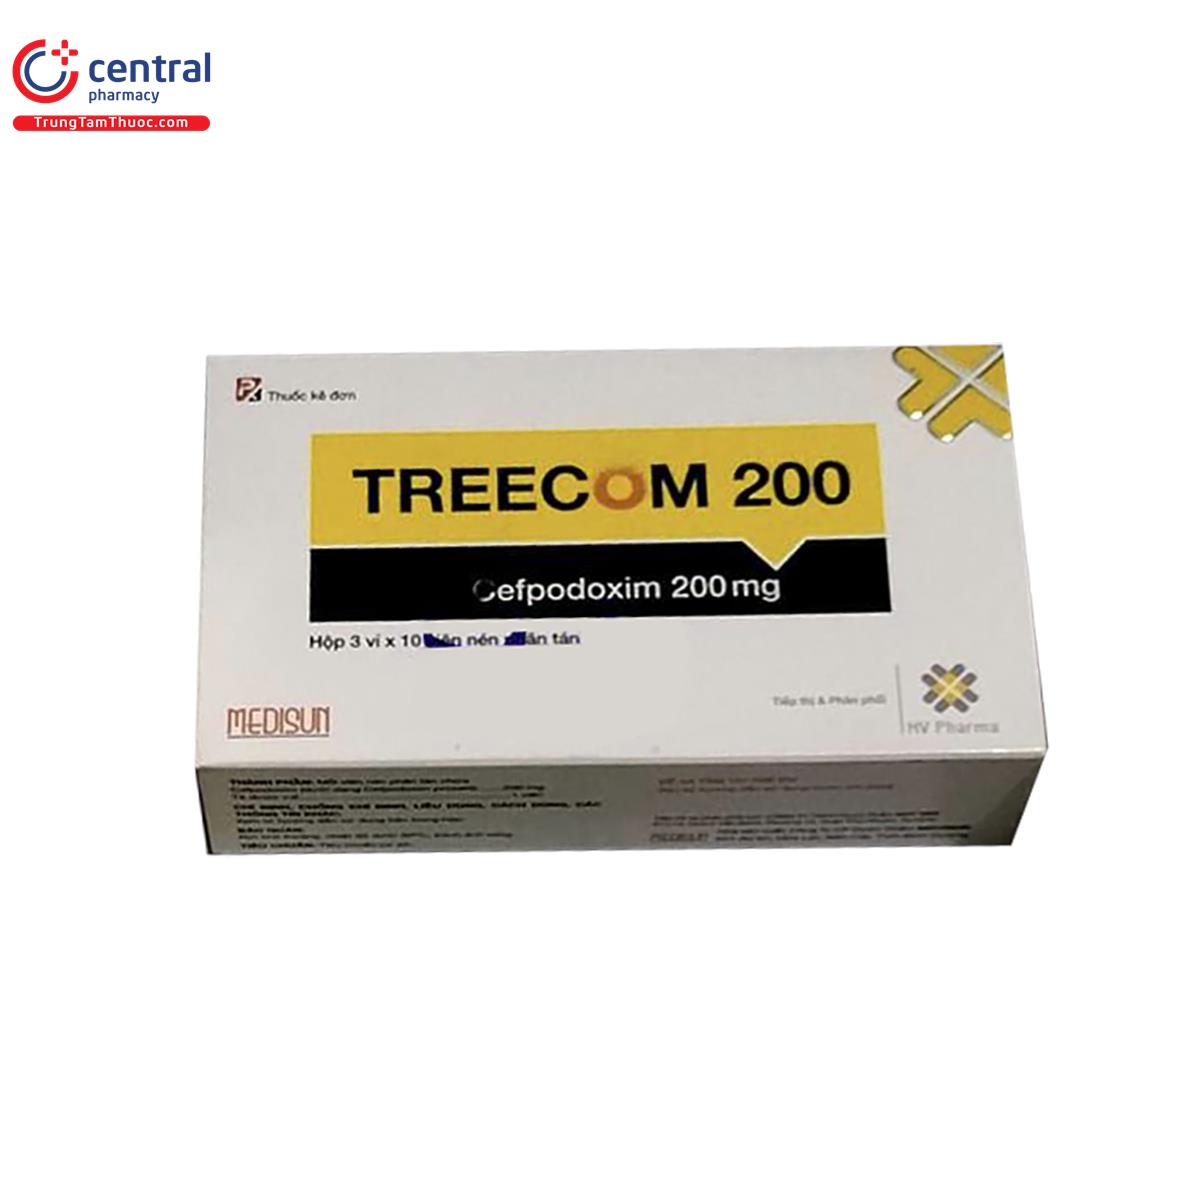 treecom 200 2 O5237